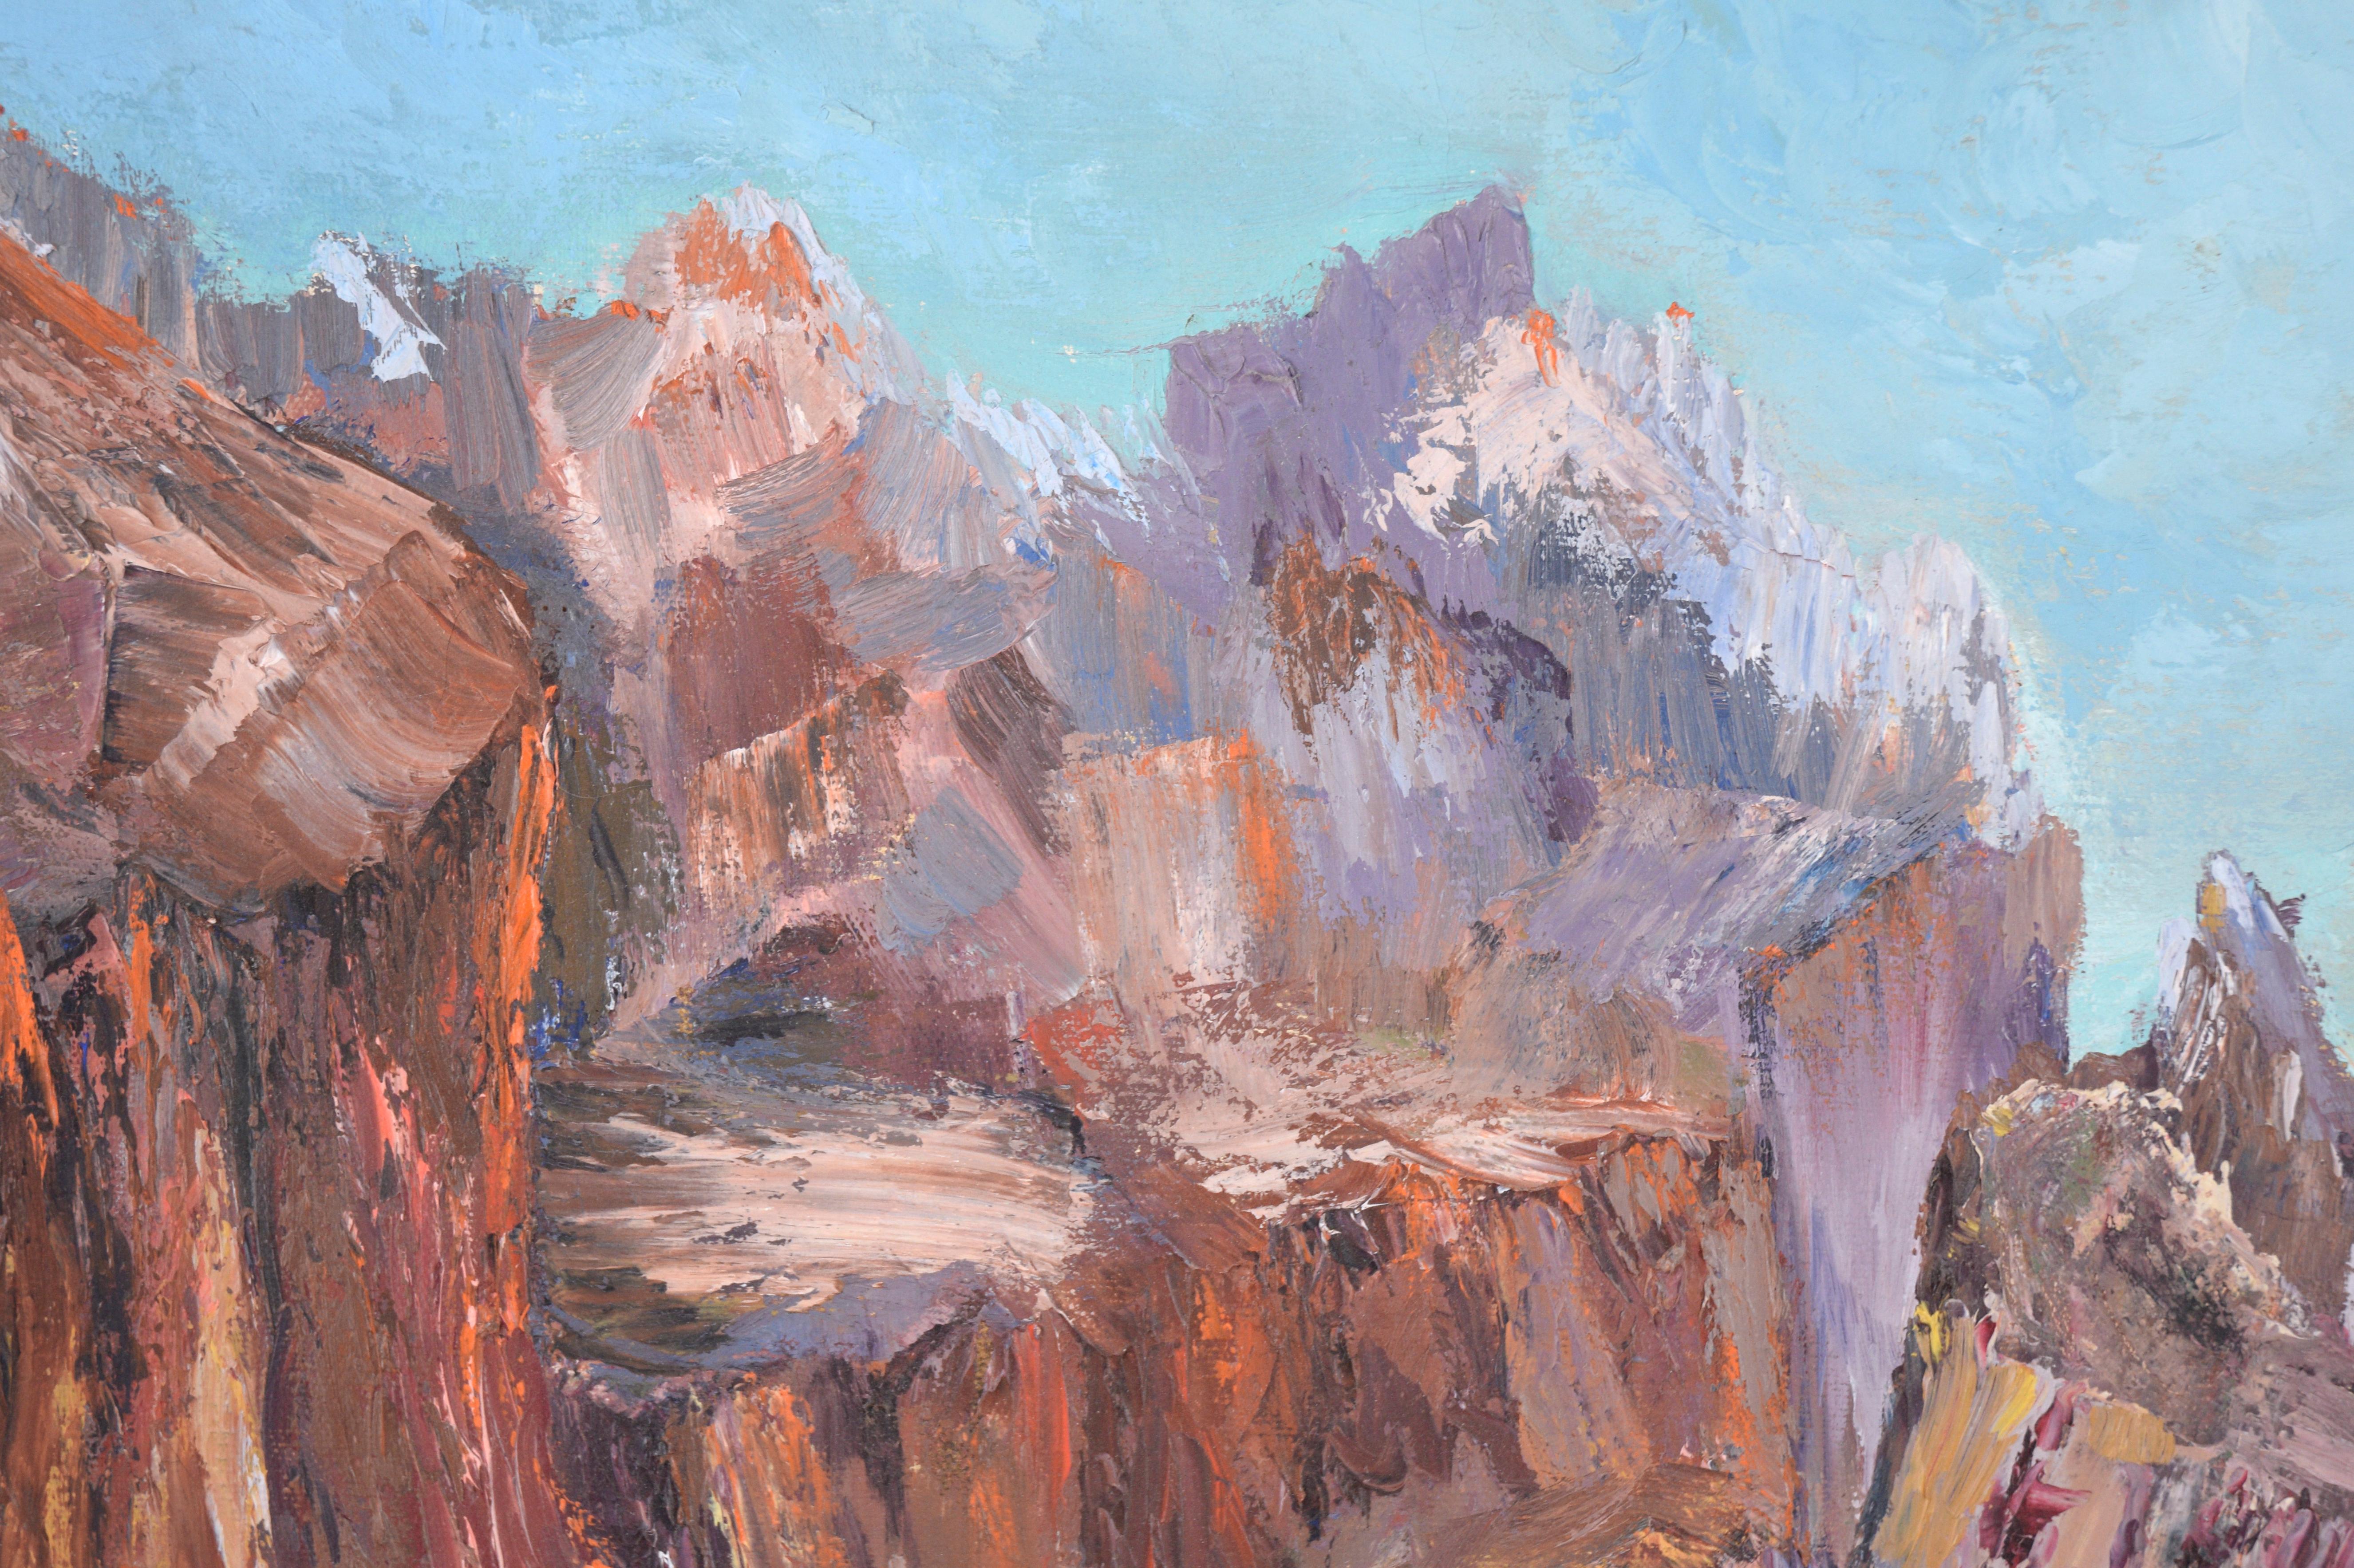 Canyonlandschaft der kalifornischen Künstlerin Kathleen Jack (Amerikanerin, 1896-1988). Ein hellblauer Fluss schlängelt sich vom Vordergrund aus durch eine zerklüftete Schlucht. Die Canyons sind mit kräftigem Impasto gemalt und verleihen der